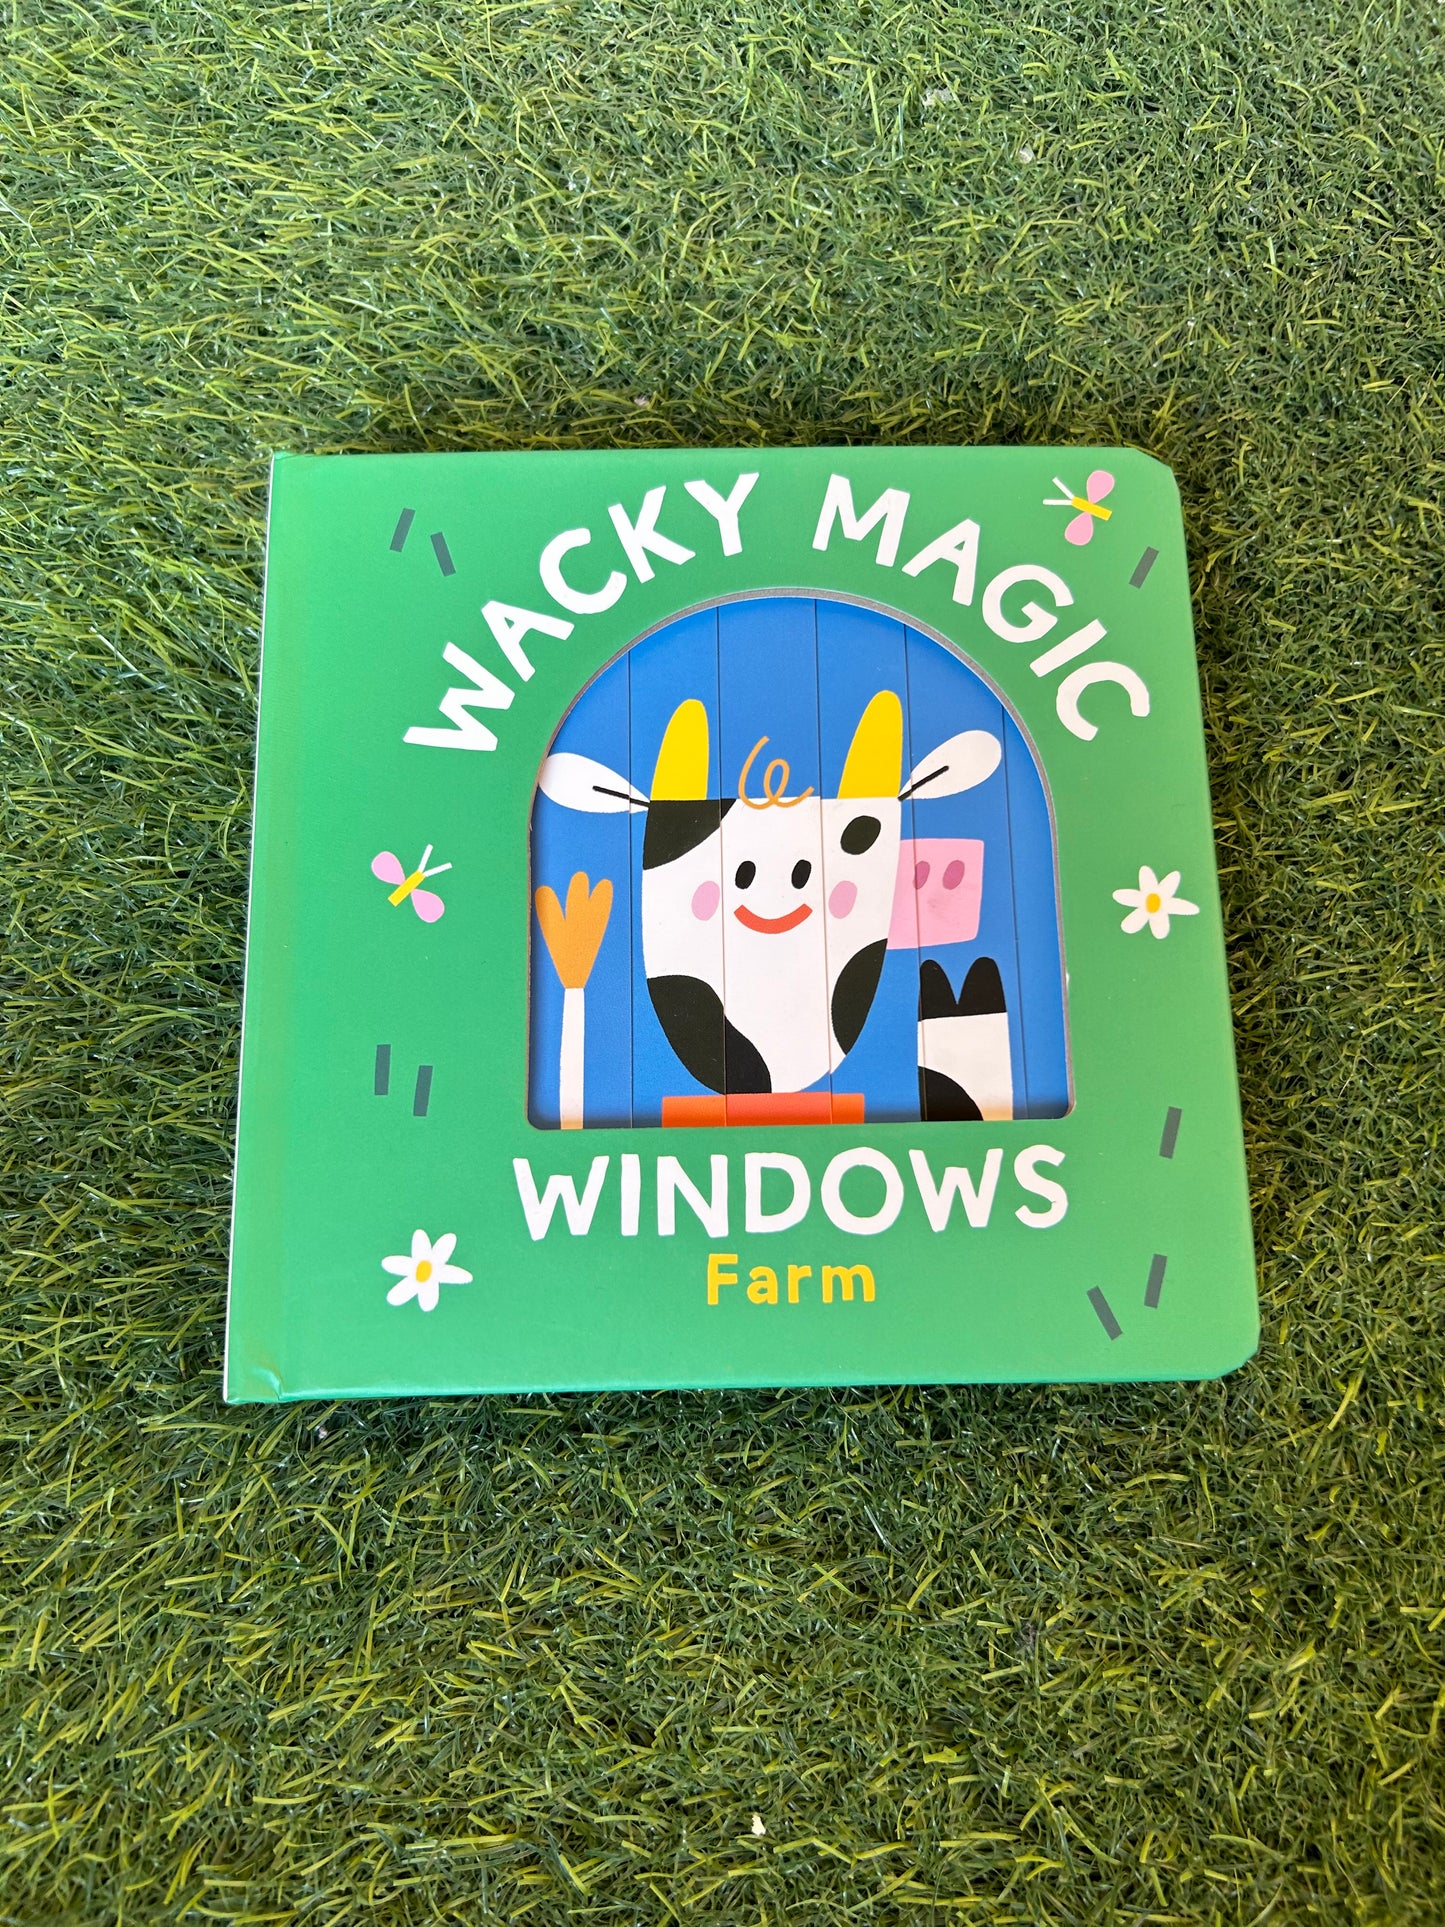 Wacky magic windows